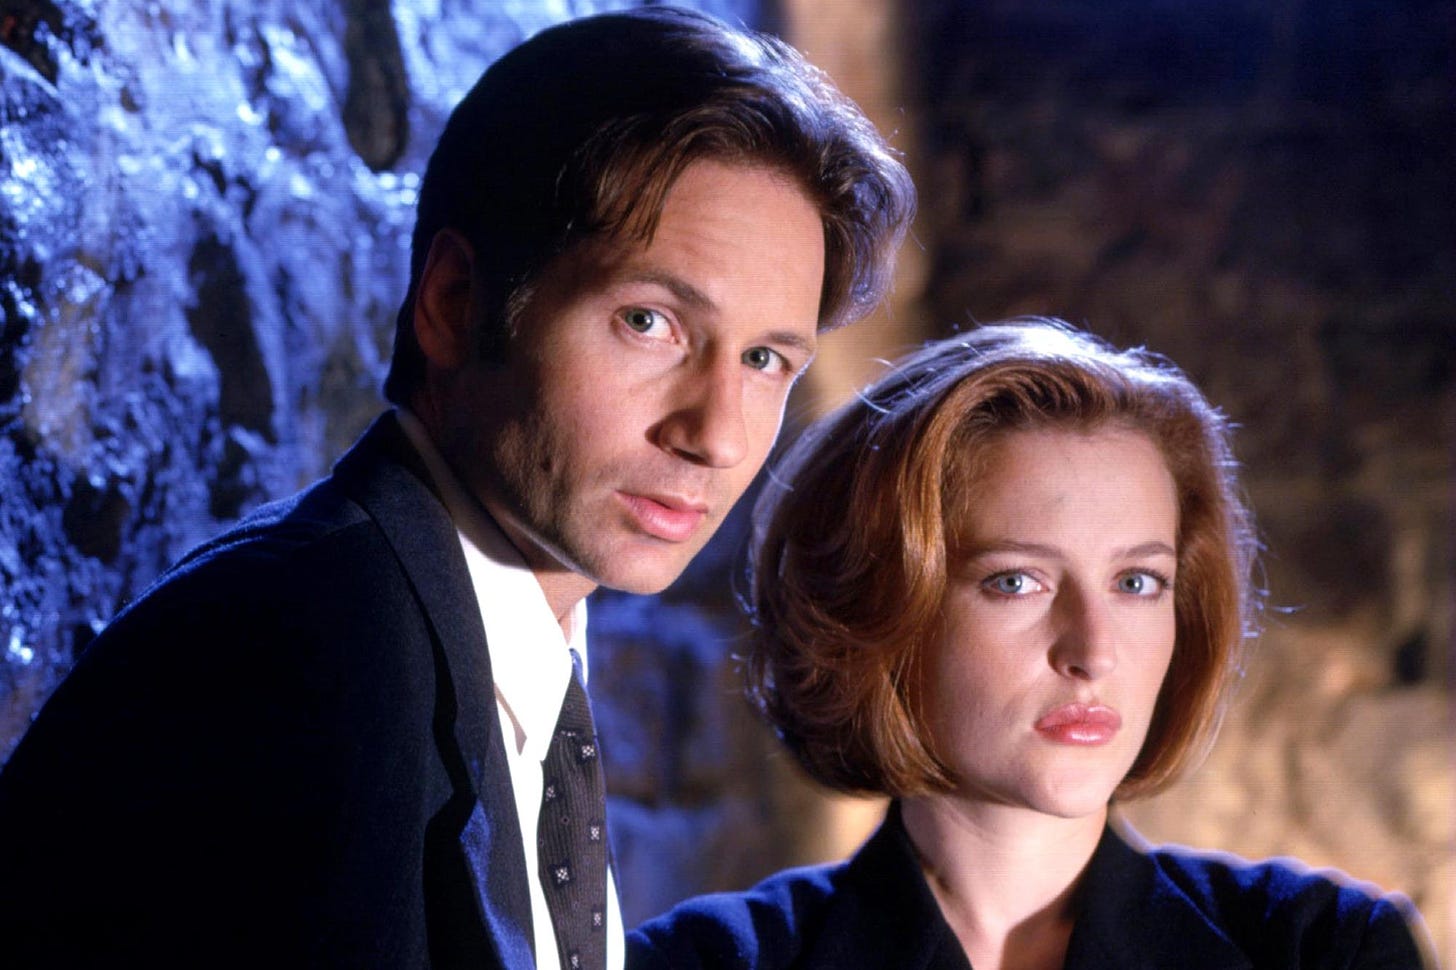 X-Files stars David Duchovny and Gillian Anderson reunite in adorable photo  | EW.com